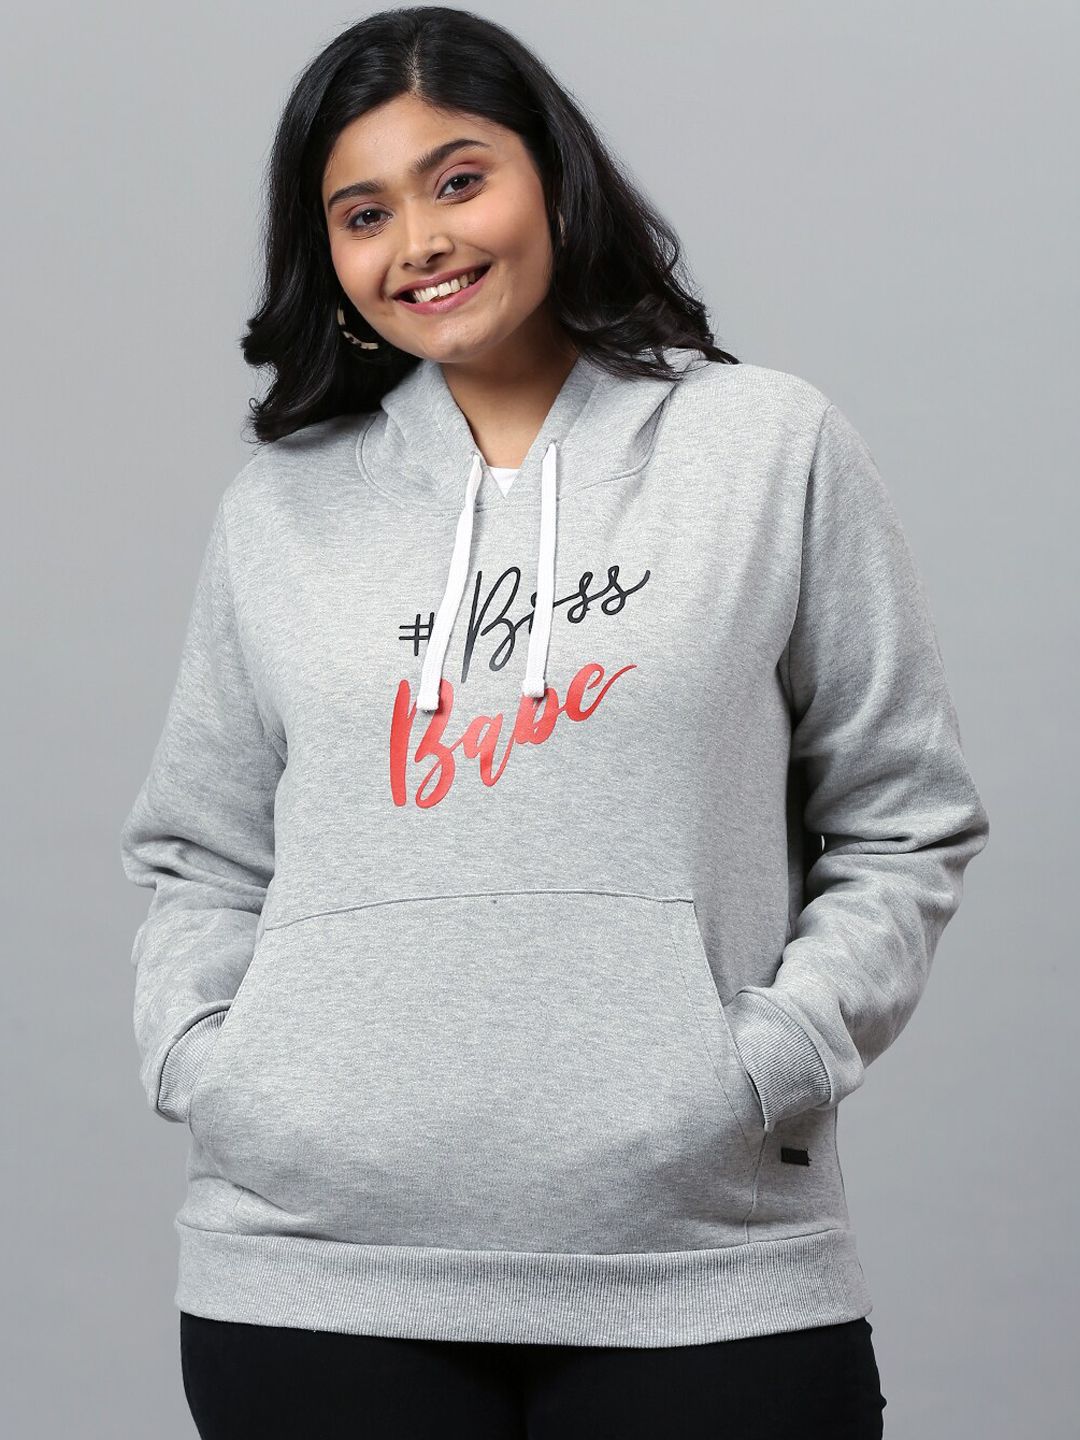 Instafab Plus Women Grey Printed Hooded Sweatshirt Price in India